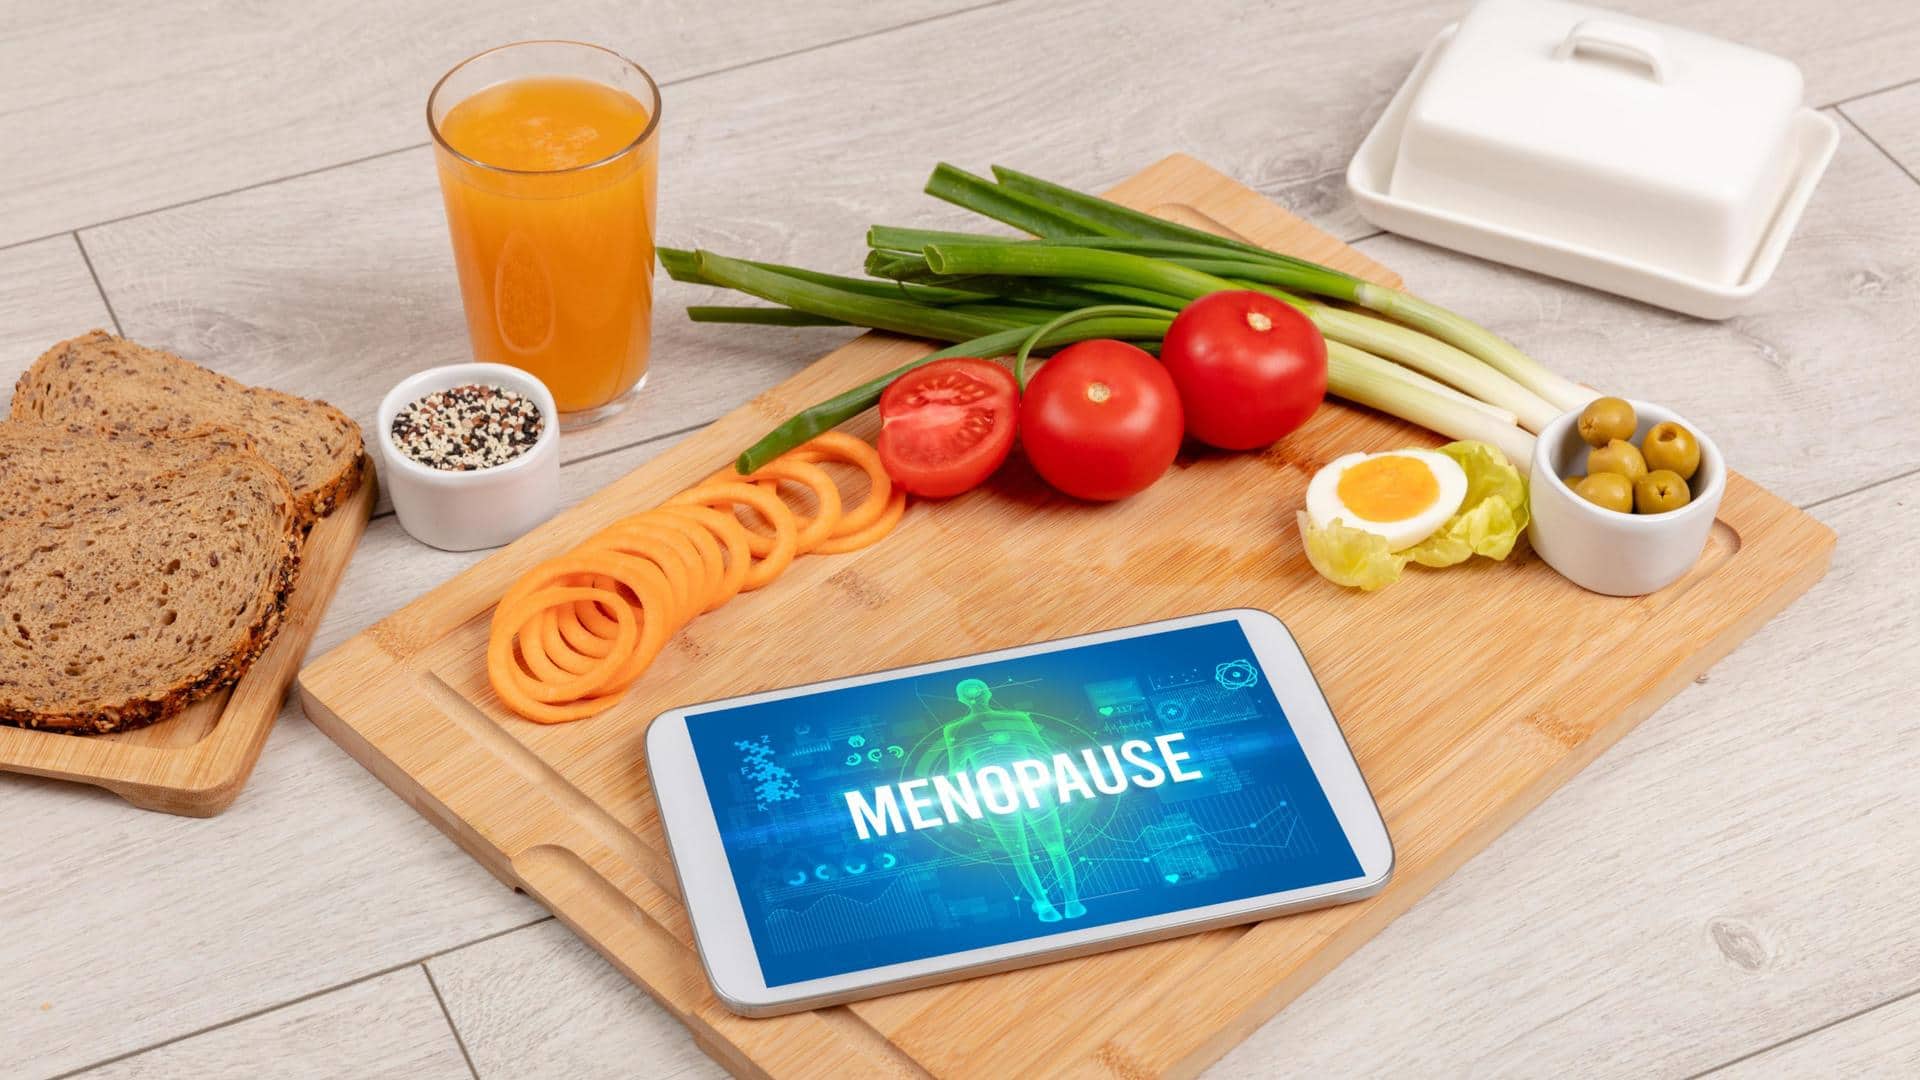 Menopause diet: Healthy foods that soothe symptoms